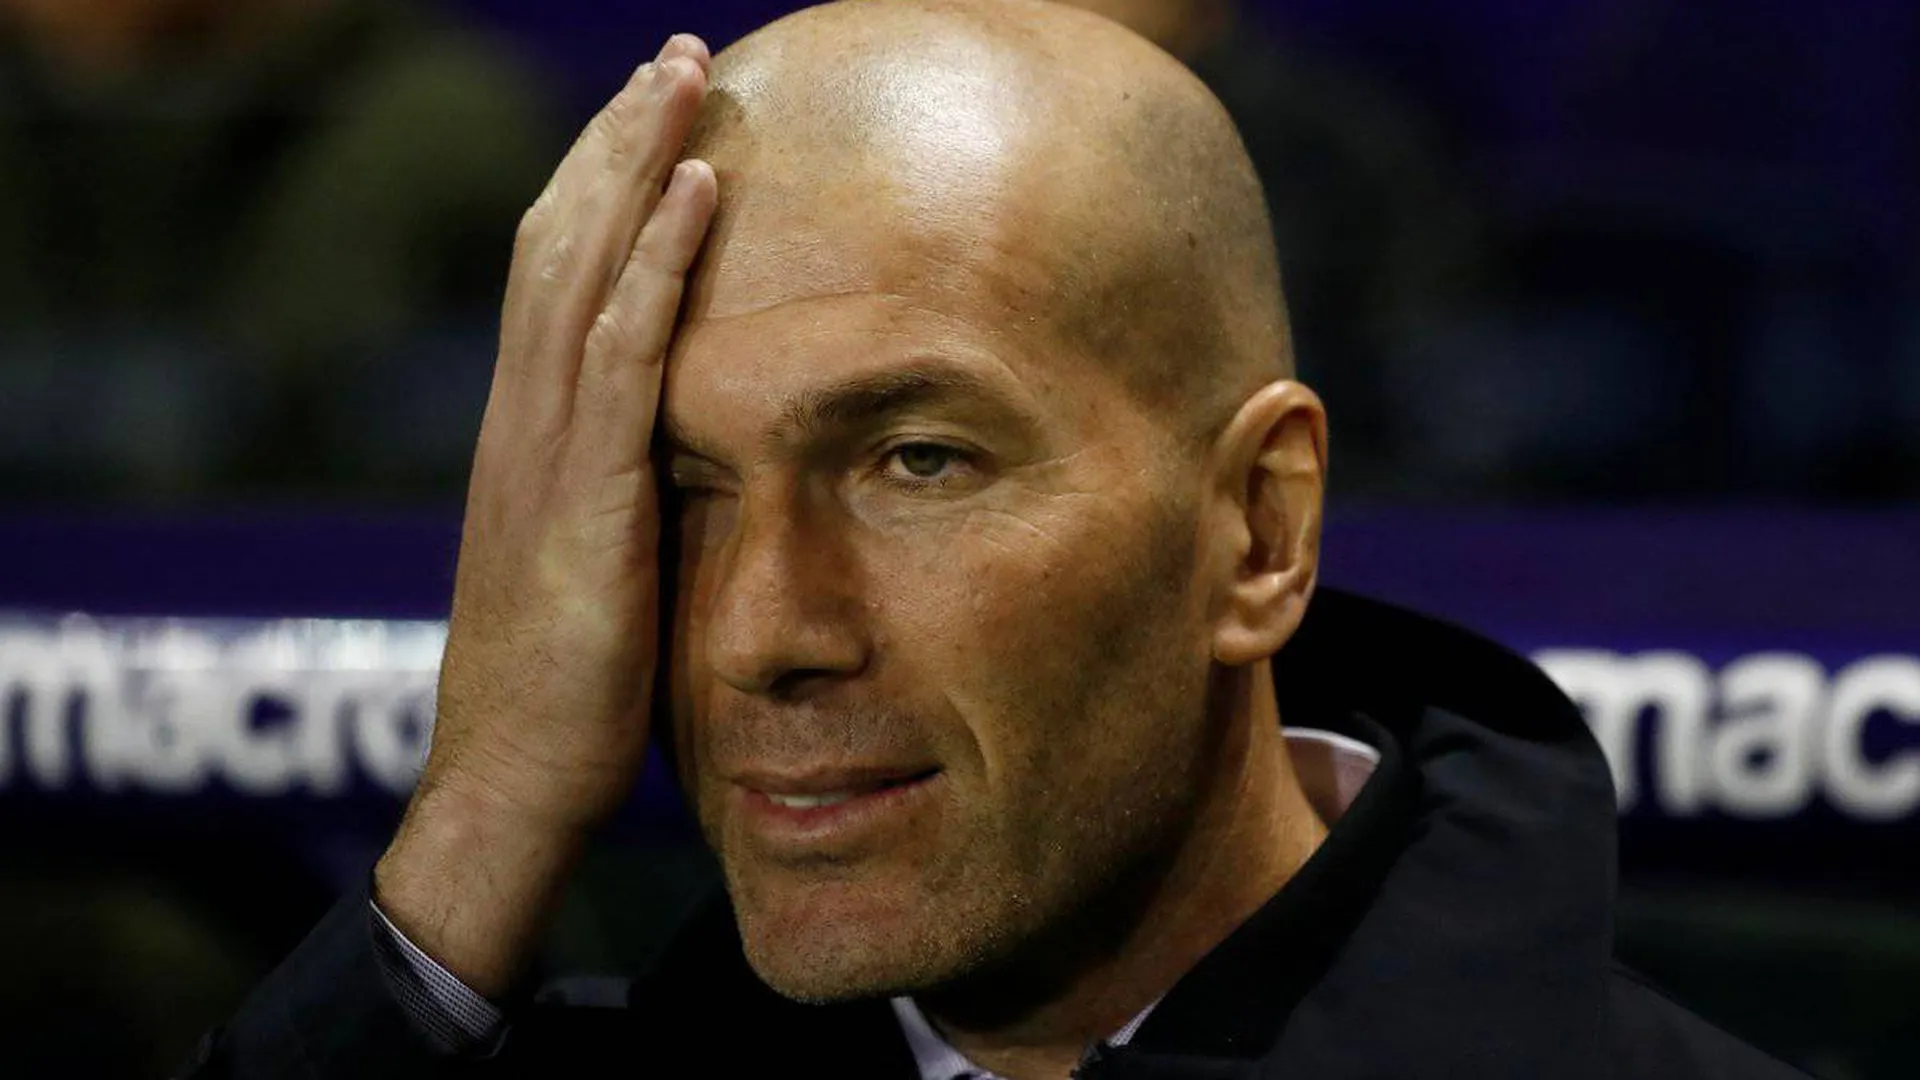 СМИ сообщили, что Зидан планирует покинуть «Реал Мадрид»